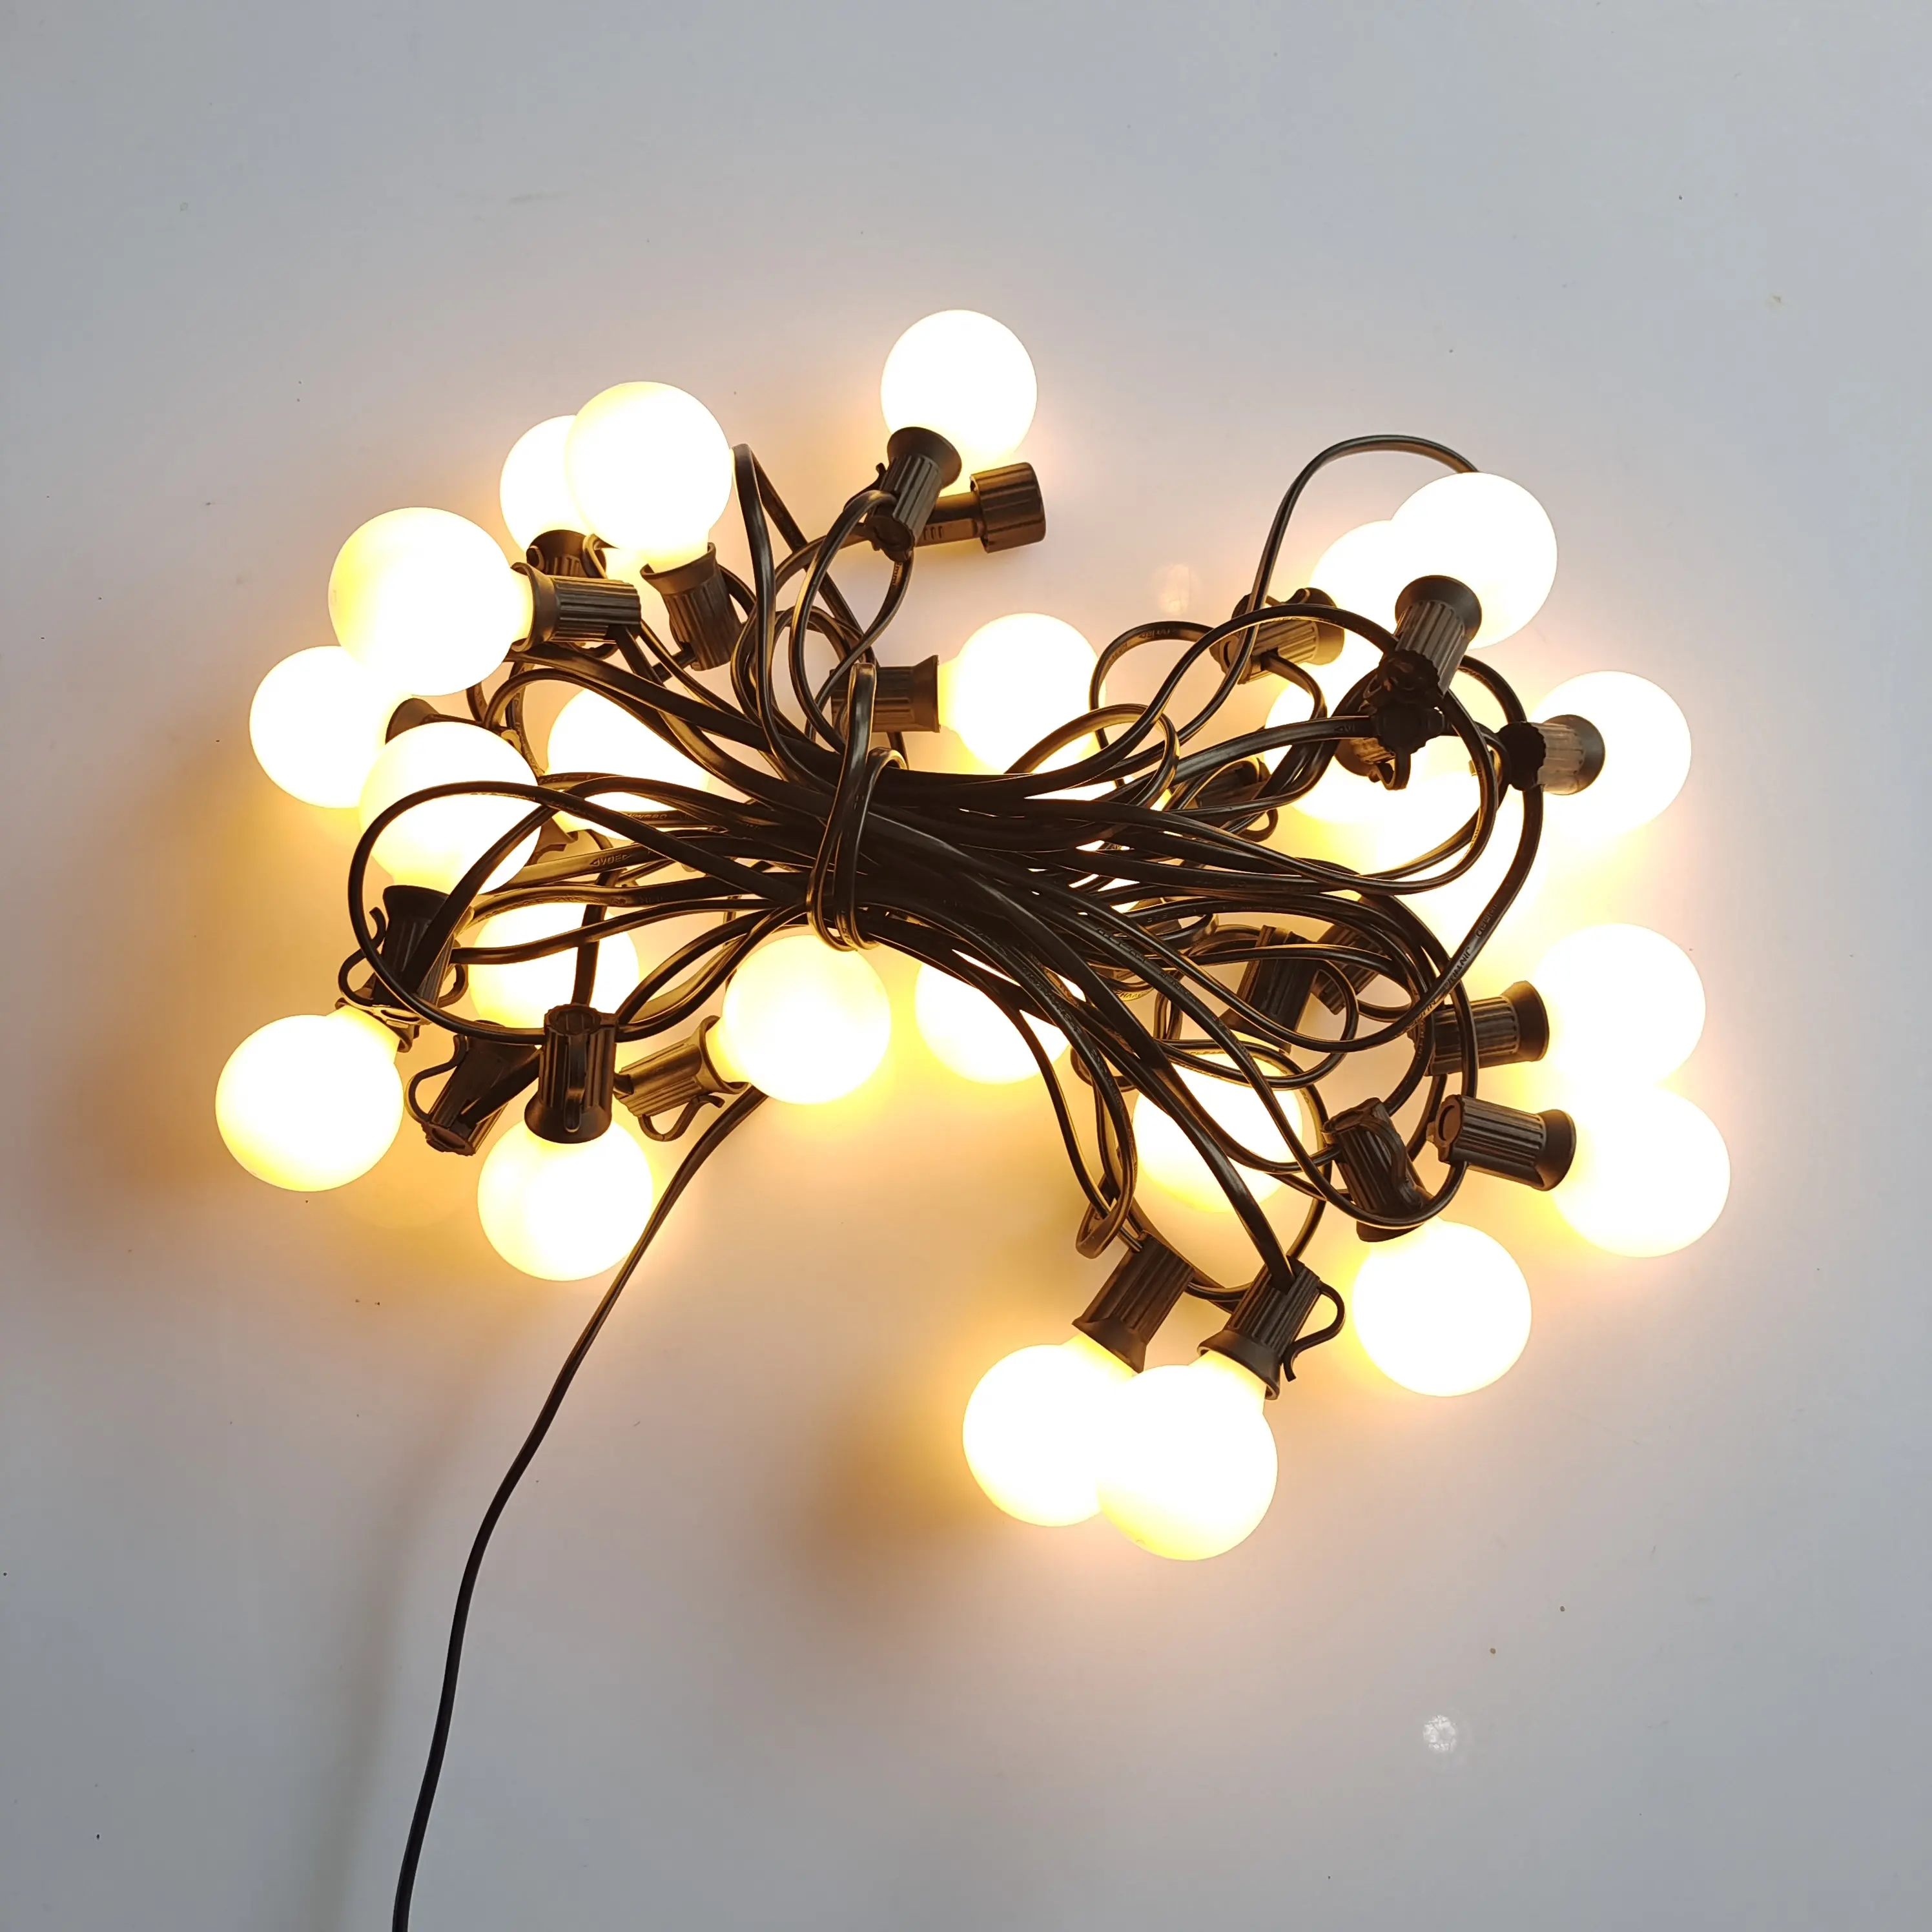 اديسون عطلة زينة مع G40 حليبي البلاستيك عاكس الضوء 50FT 50 أضواء LED في الهواء الطلق عيد الميلاد مصباح الحديقة سلسلة